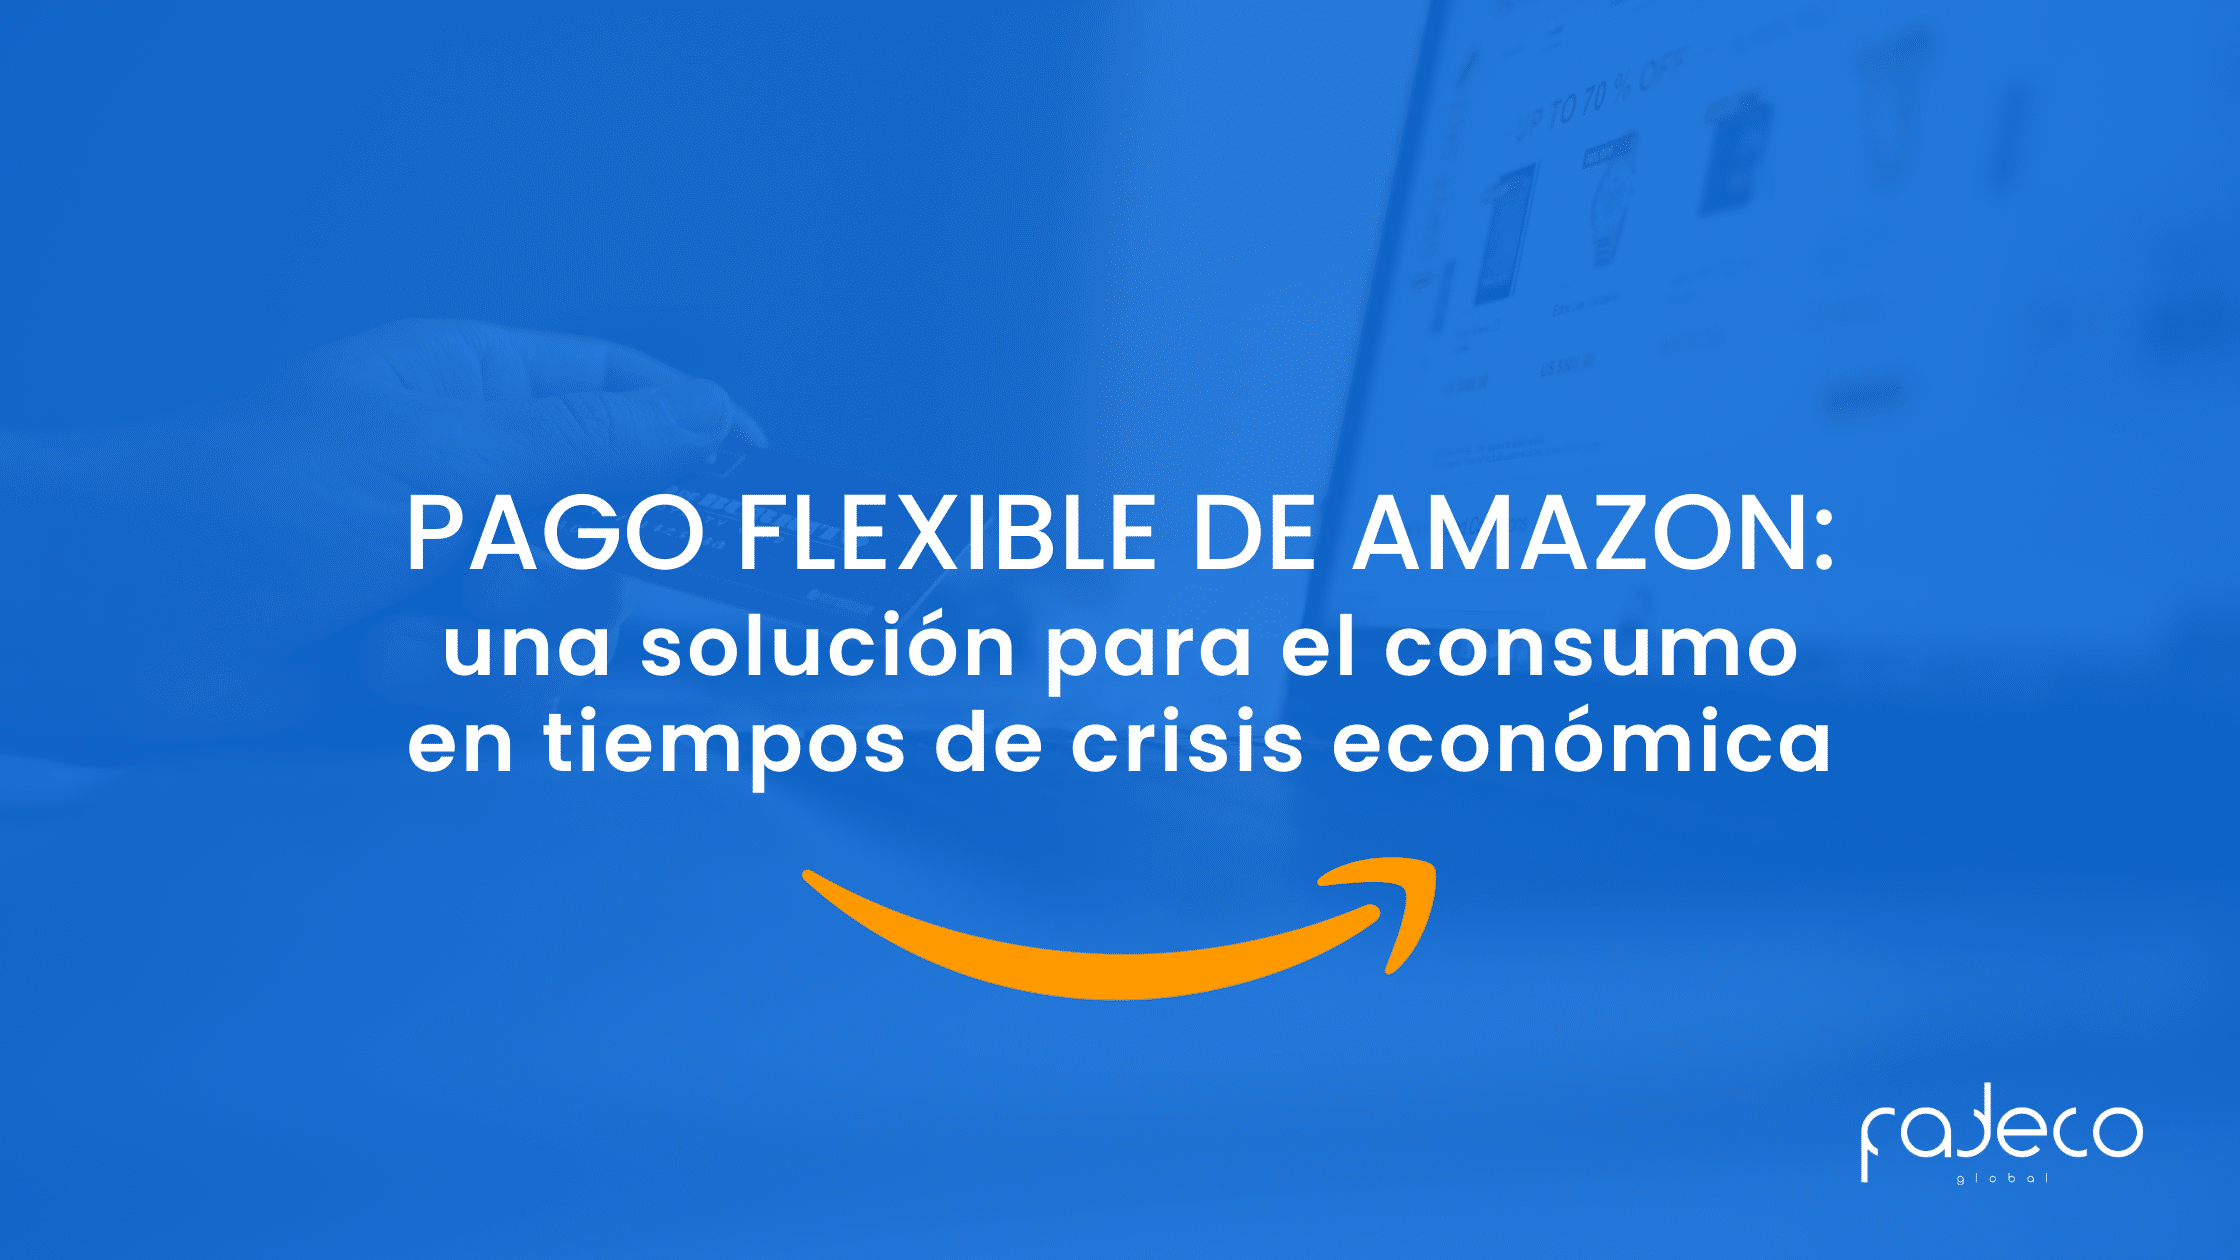 Pago flexible de Amazon